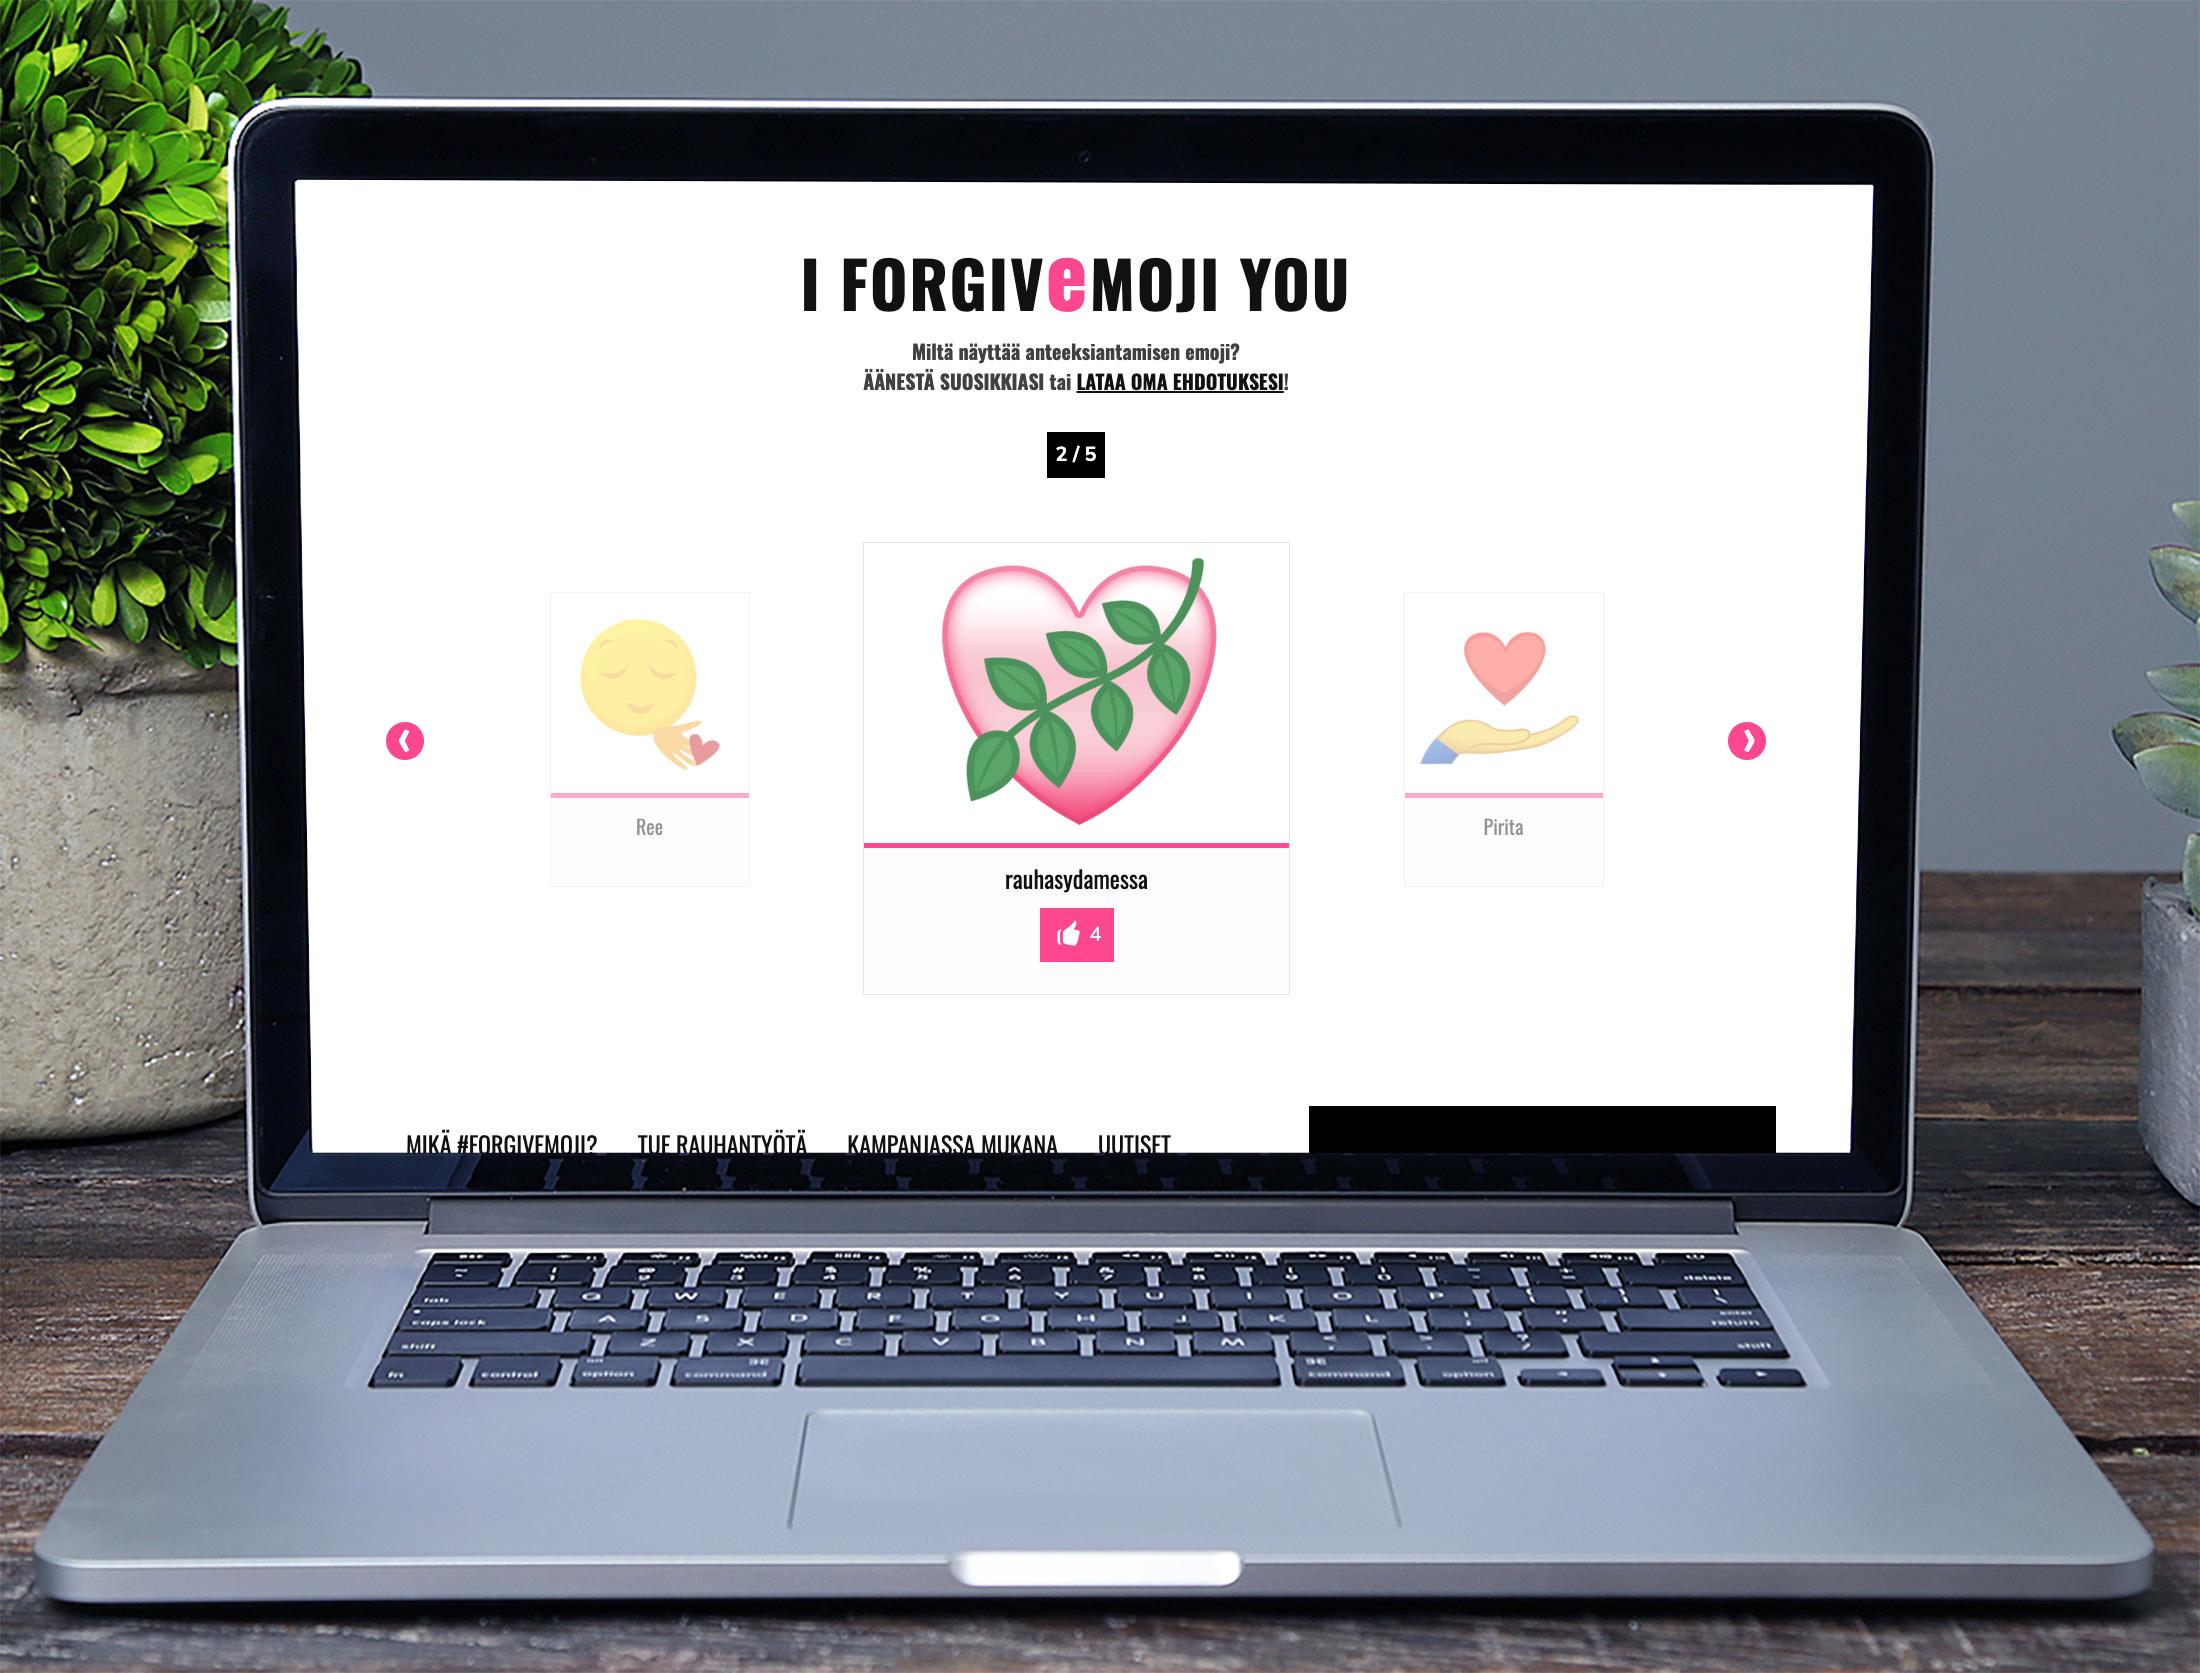 Ein Emoji für Vergebung: Vorschläge für ein #forgivemoji können auf einer Online Plattform eingereicht und bewertet werden. Foto: Forgiveemoji